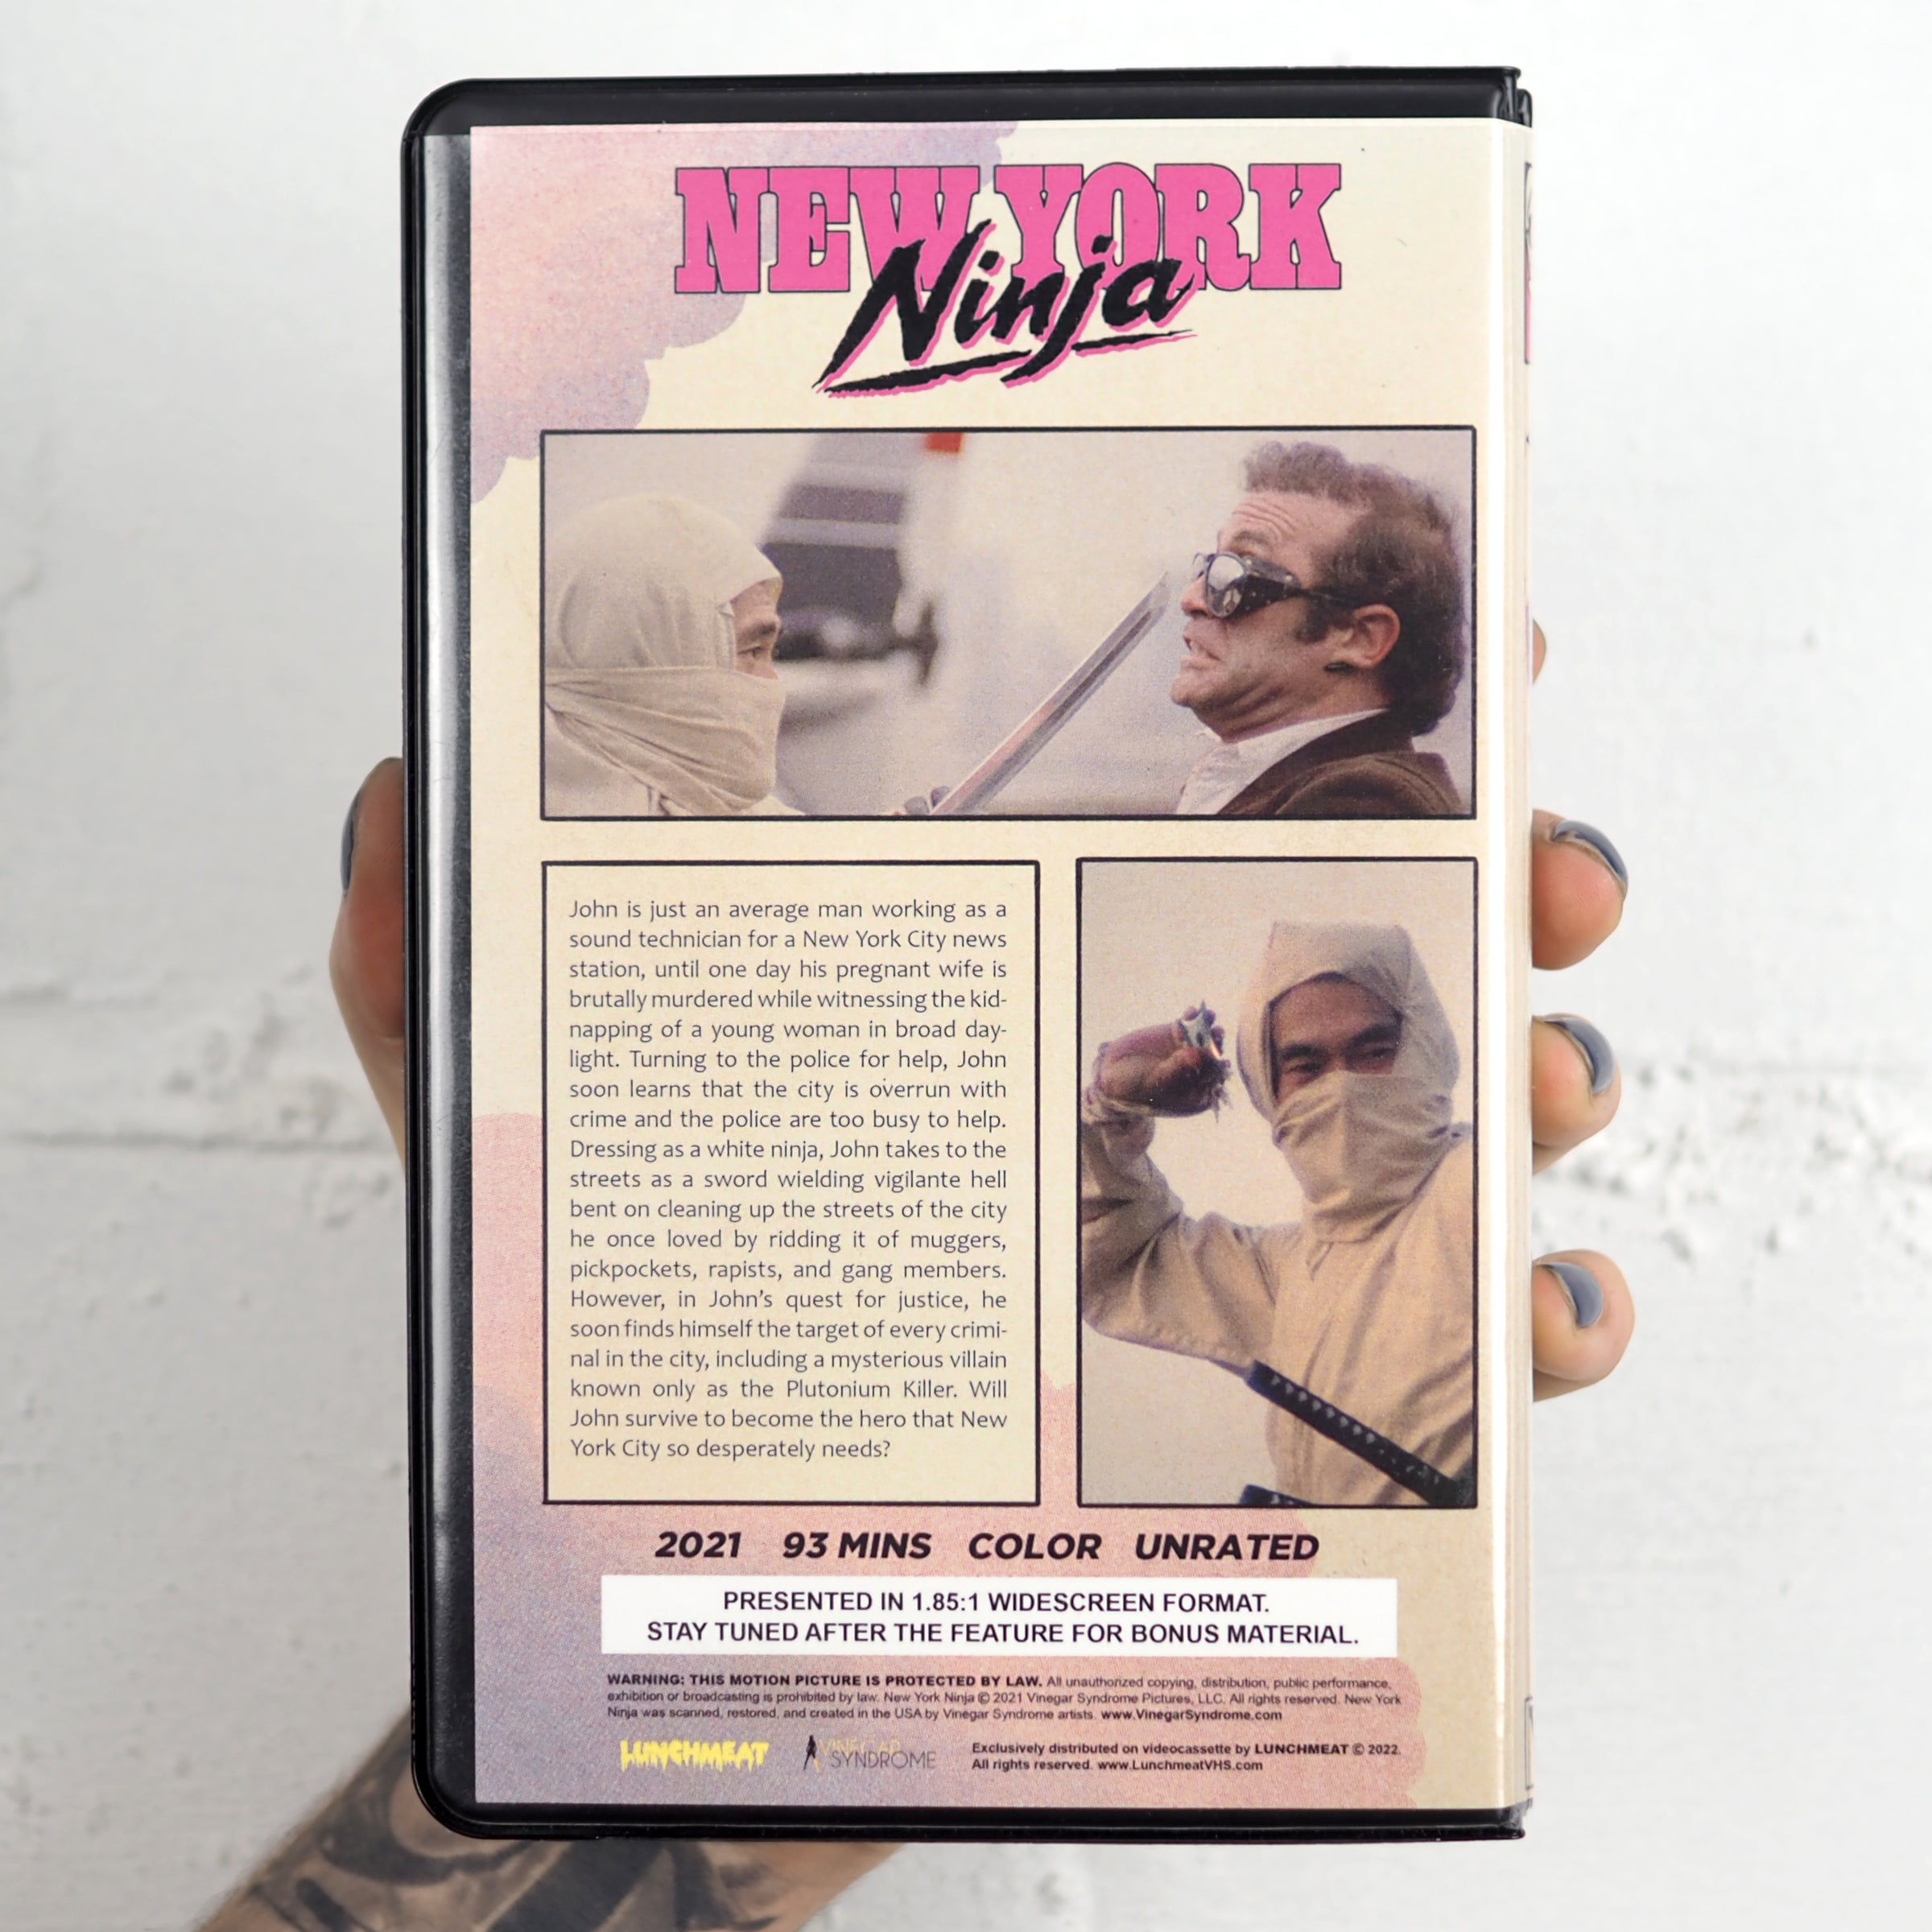 New York Ninja - Comic Book – Vinegar Syndrome